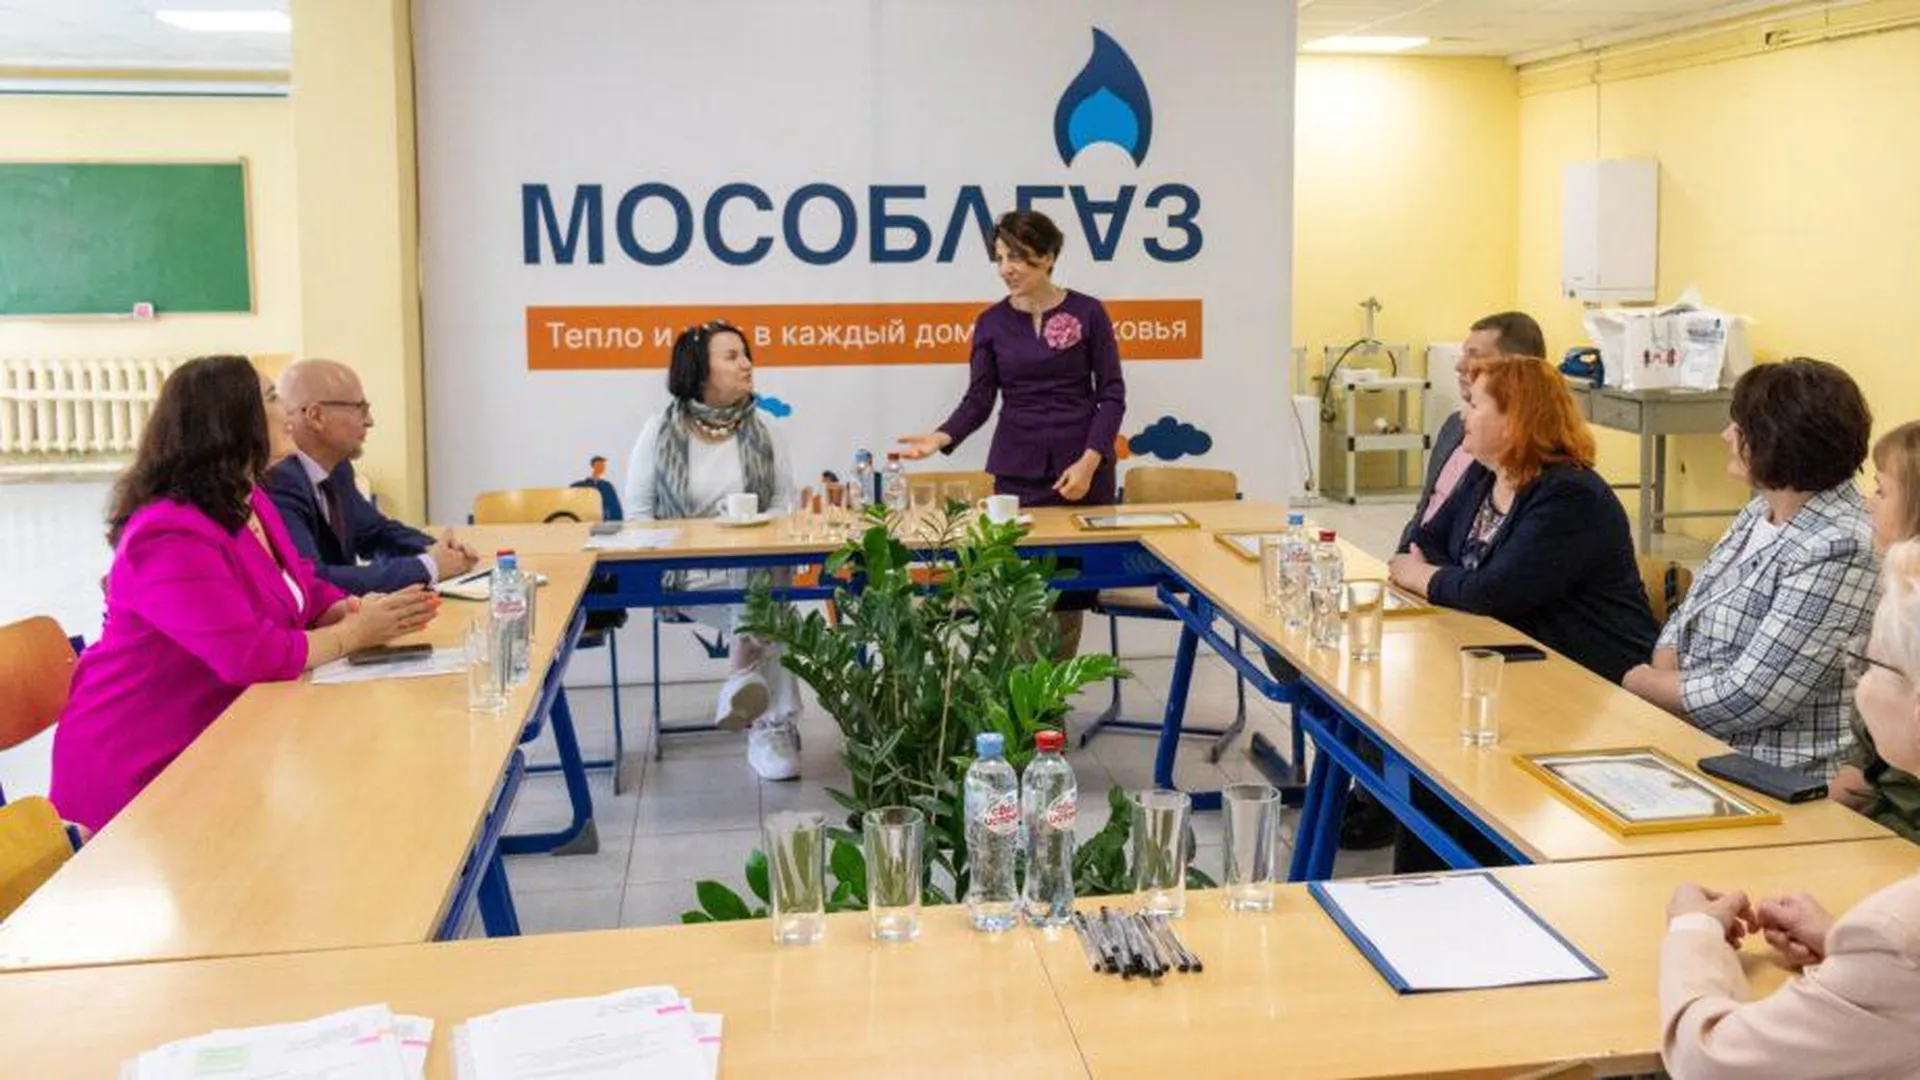 Мособлгаз обеспечил Щелковский колледж новым учебным оборудованием